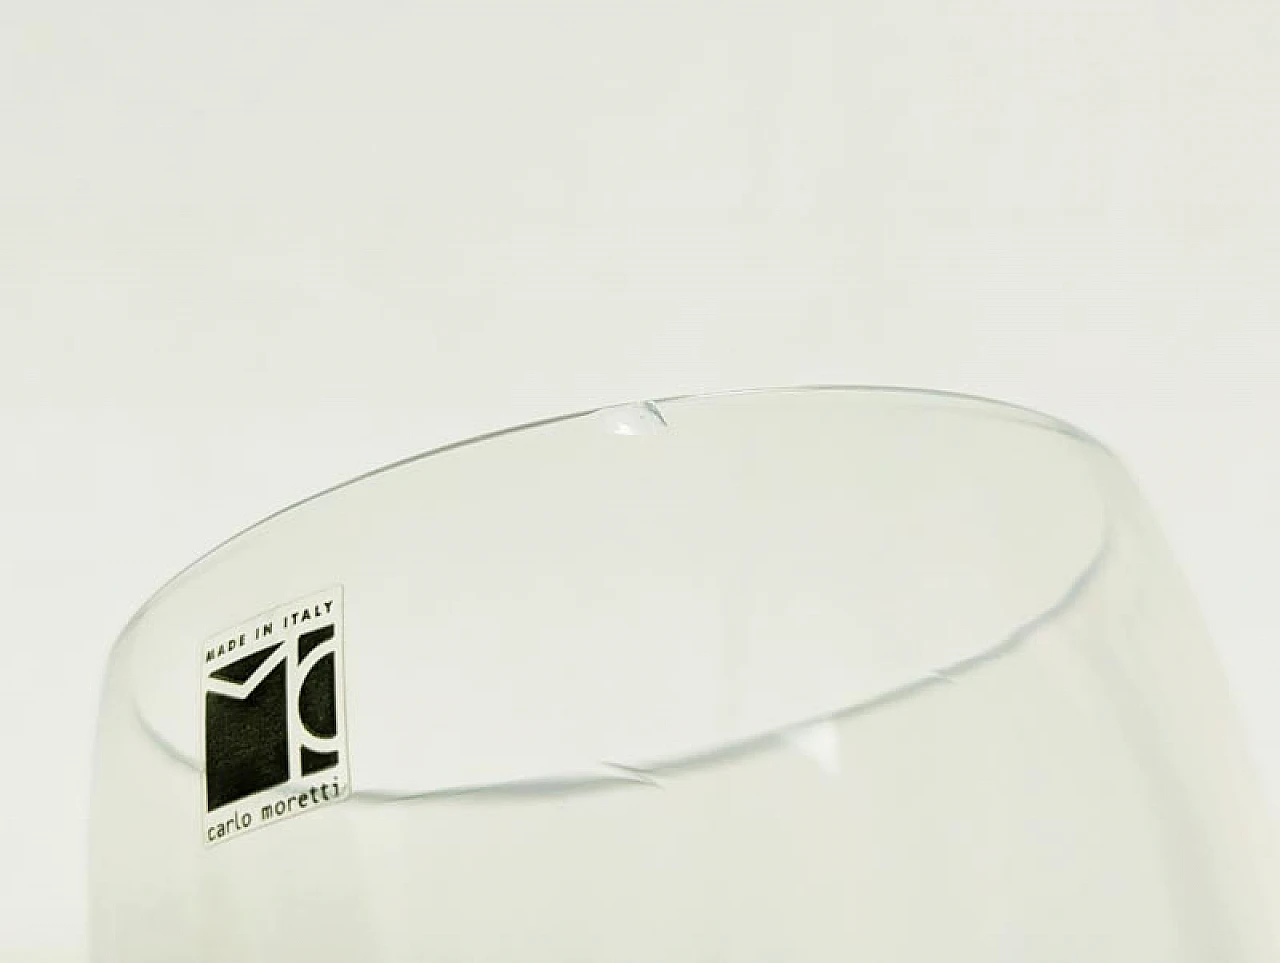 Murano glass cup by Carlo Moretti, 2002 6